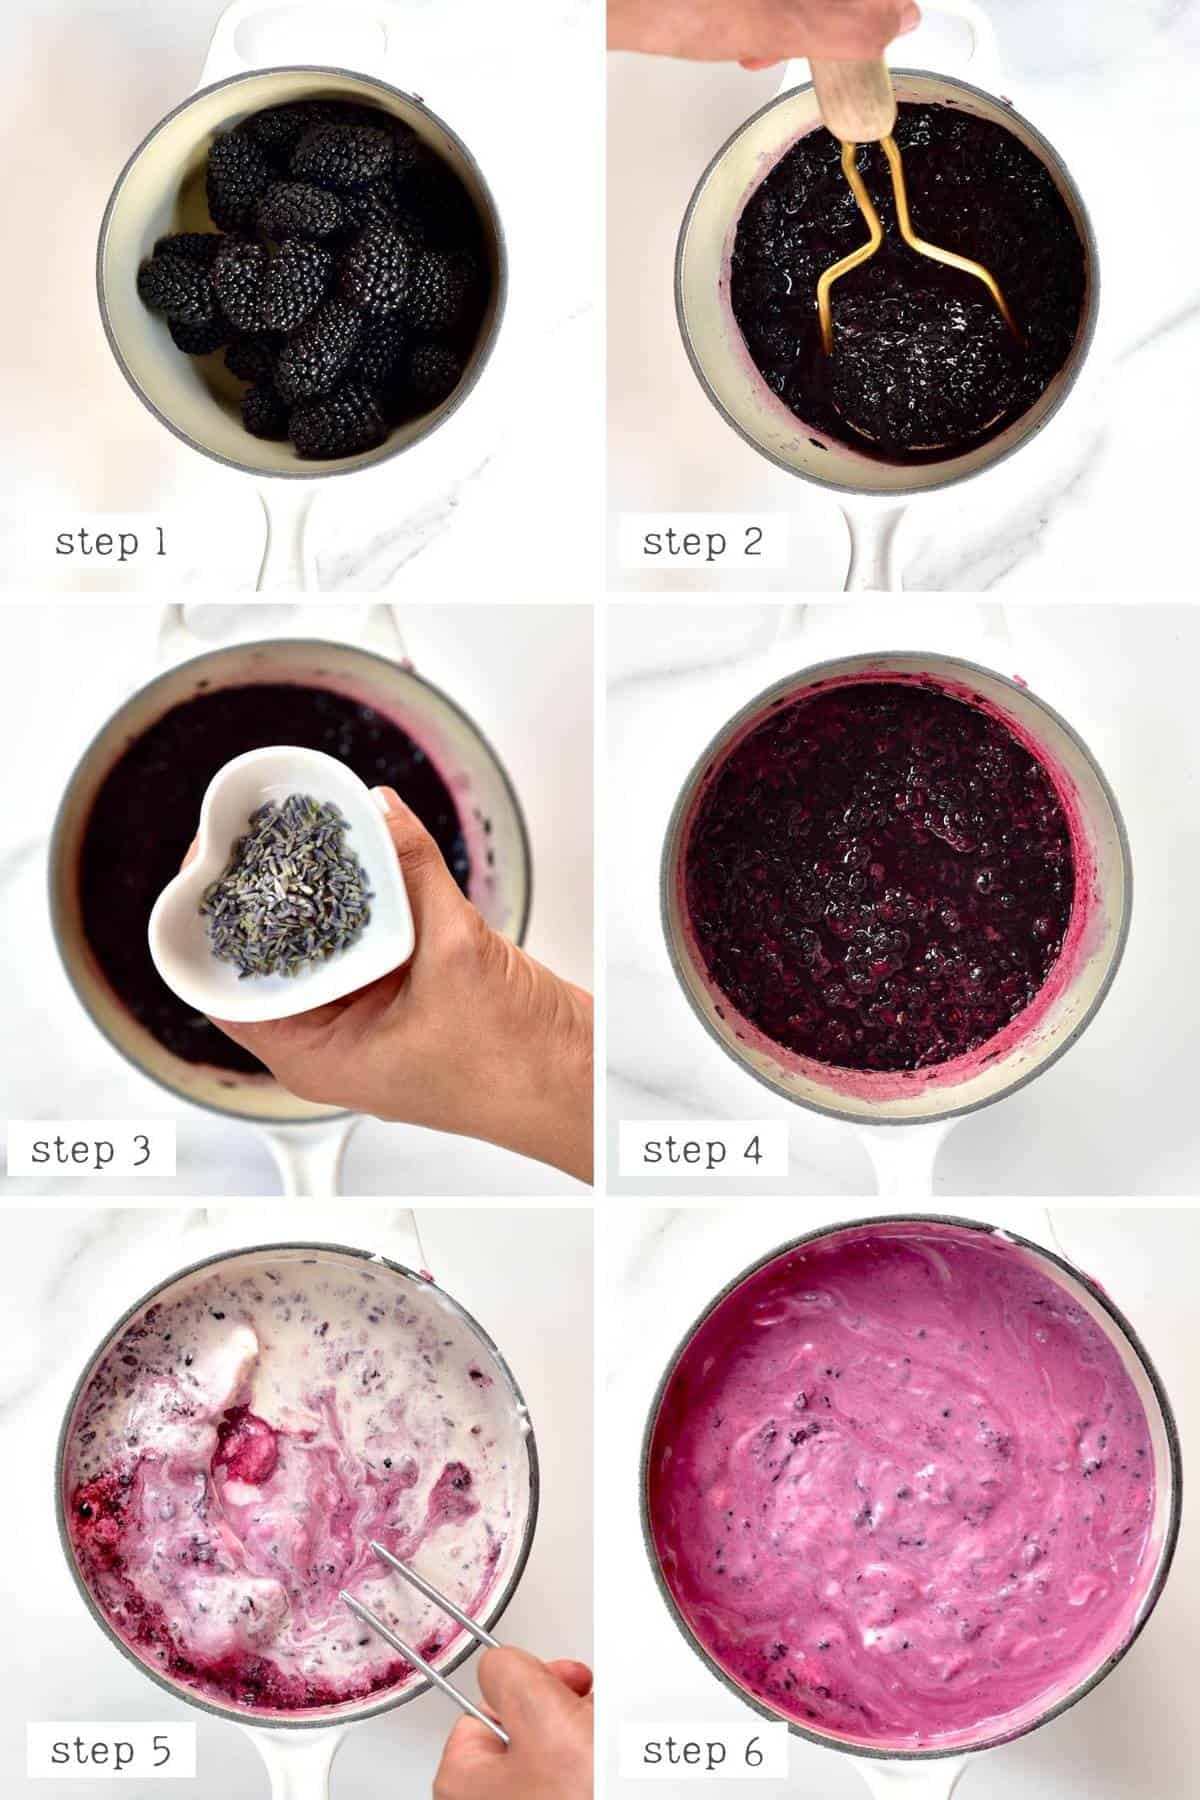 Steps for making blackberry Ice cream